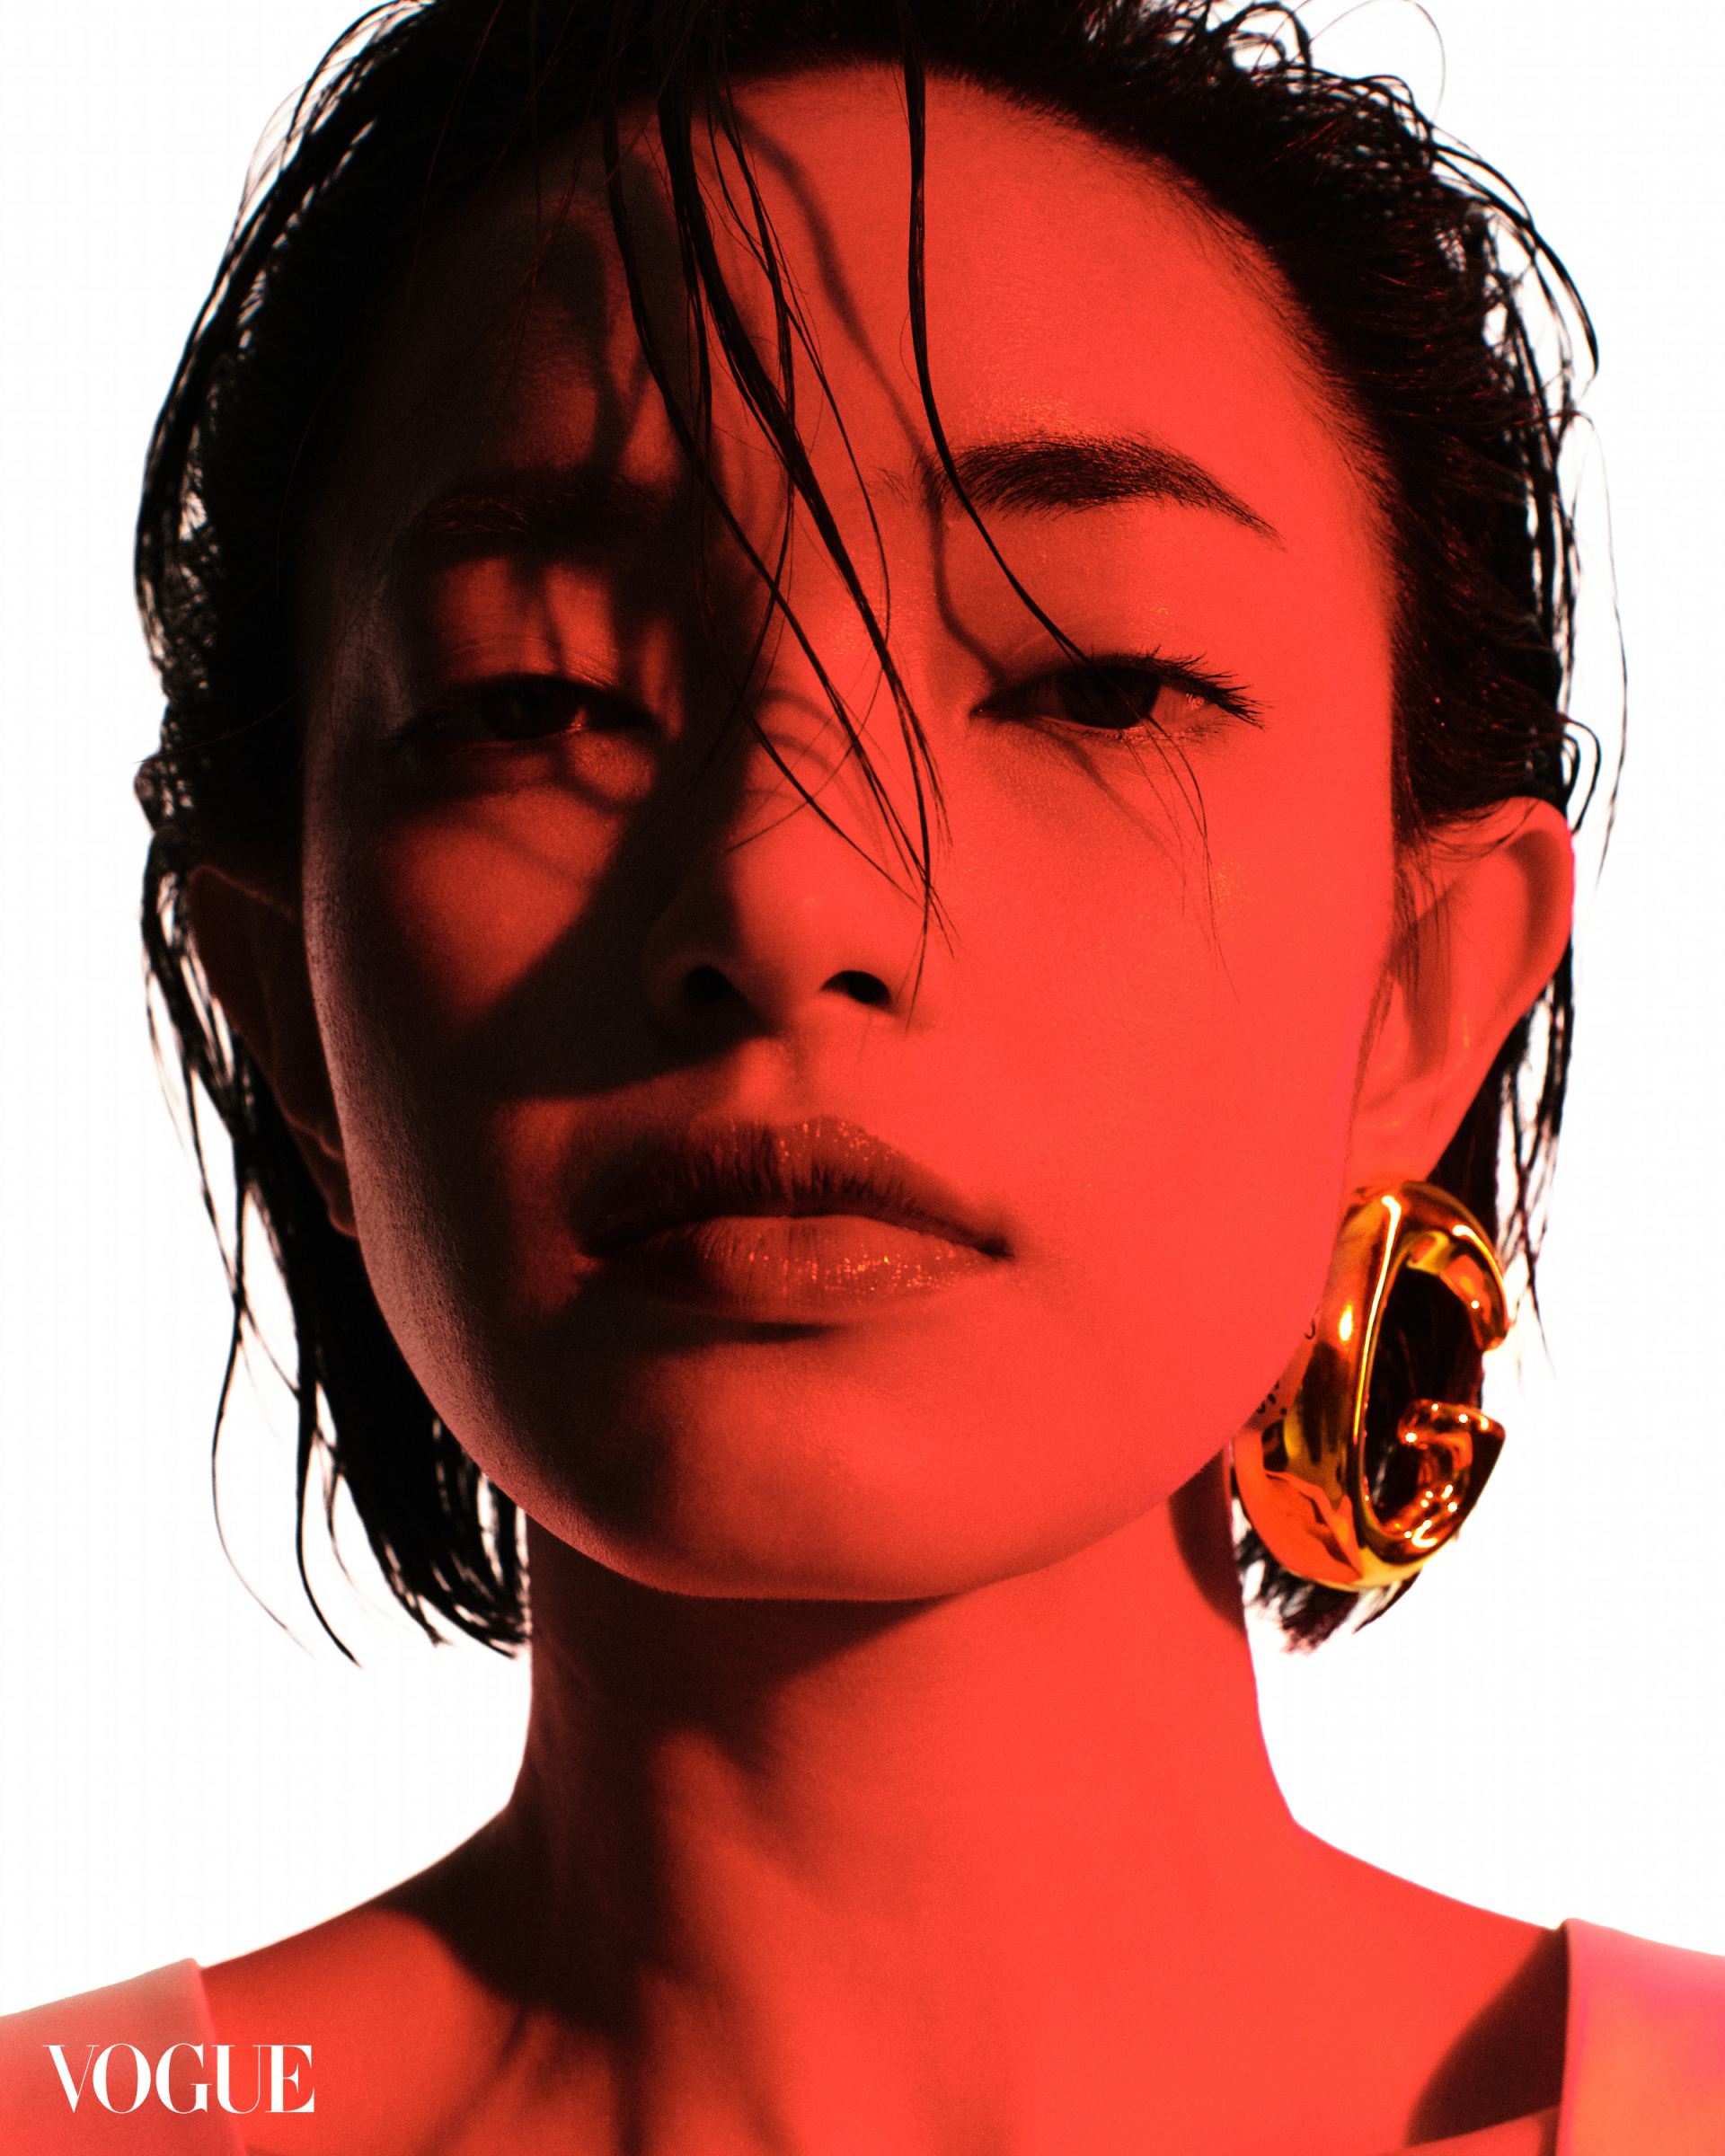 Châu Bùi đọ sắc cùng 'mỹ nhân đẹp nhất thế giới' Liza Soberano trên tạp chí Vogue Philippines - ảnh 4